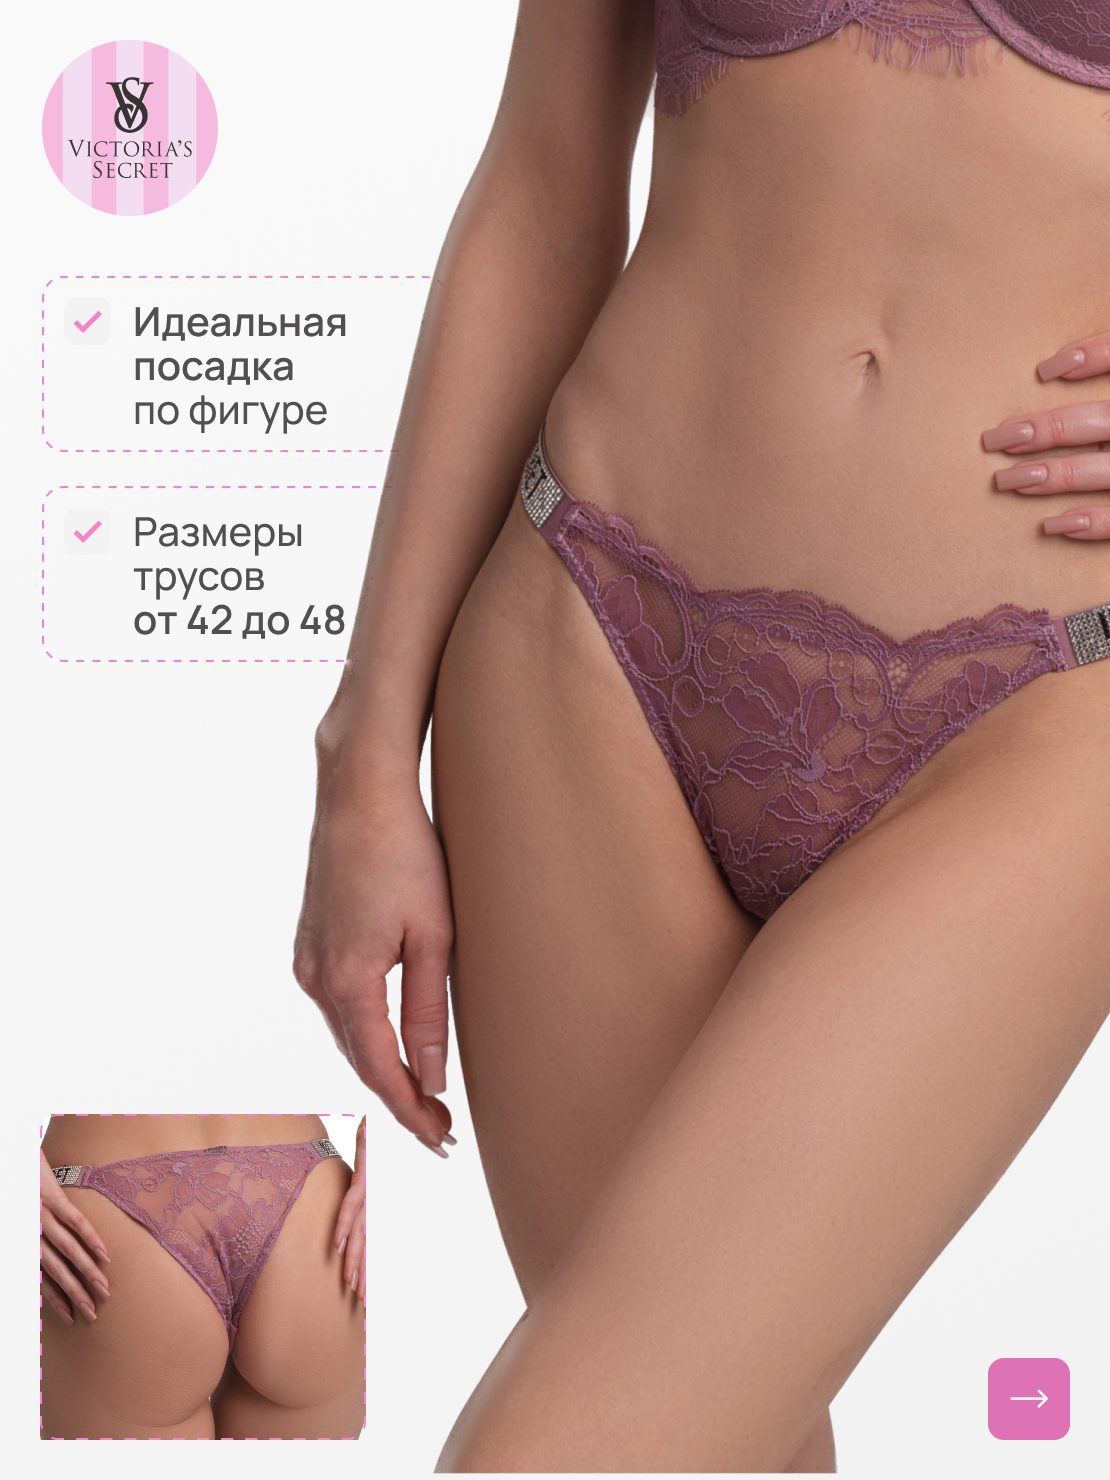 Трусы Victoria's Secret, размер M, лиловый, фиолетовый